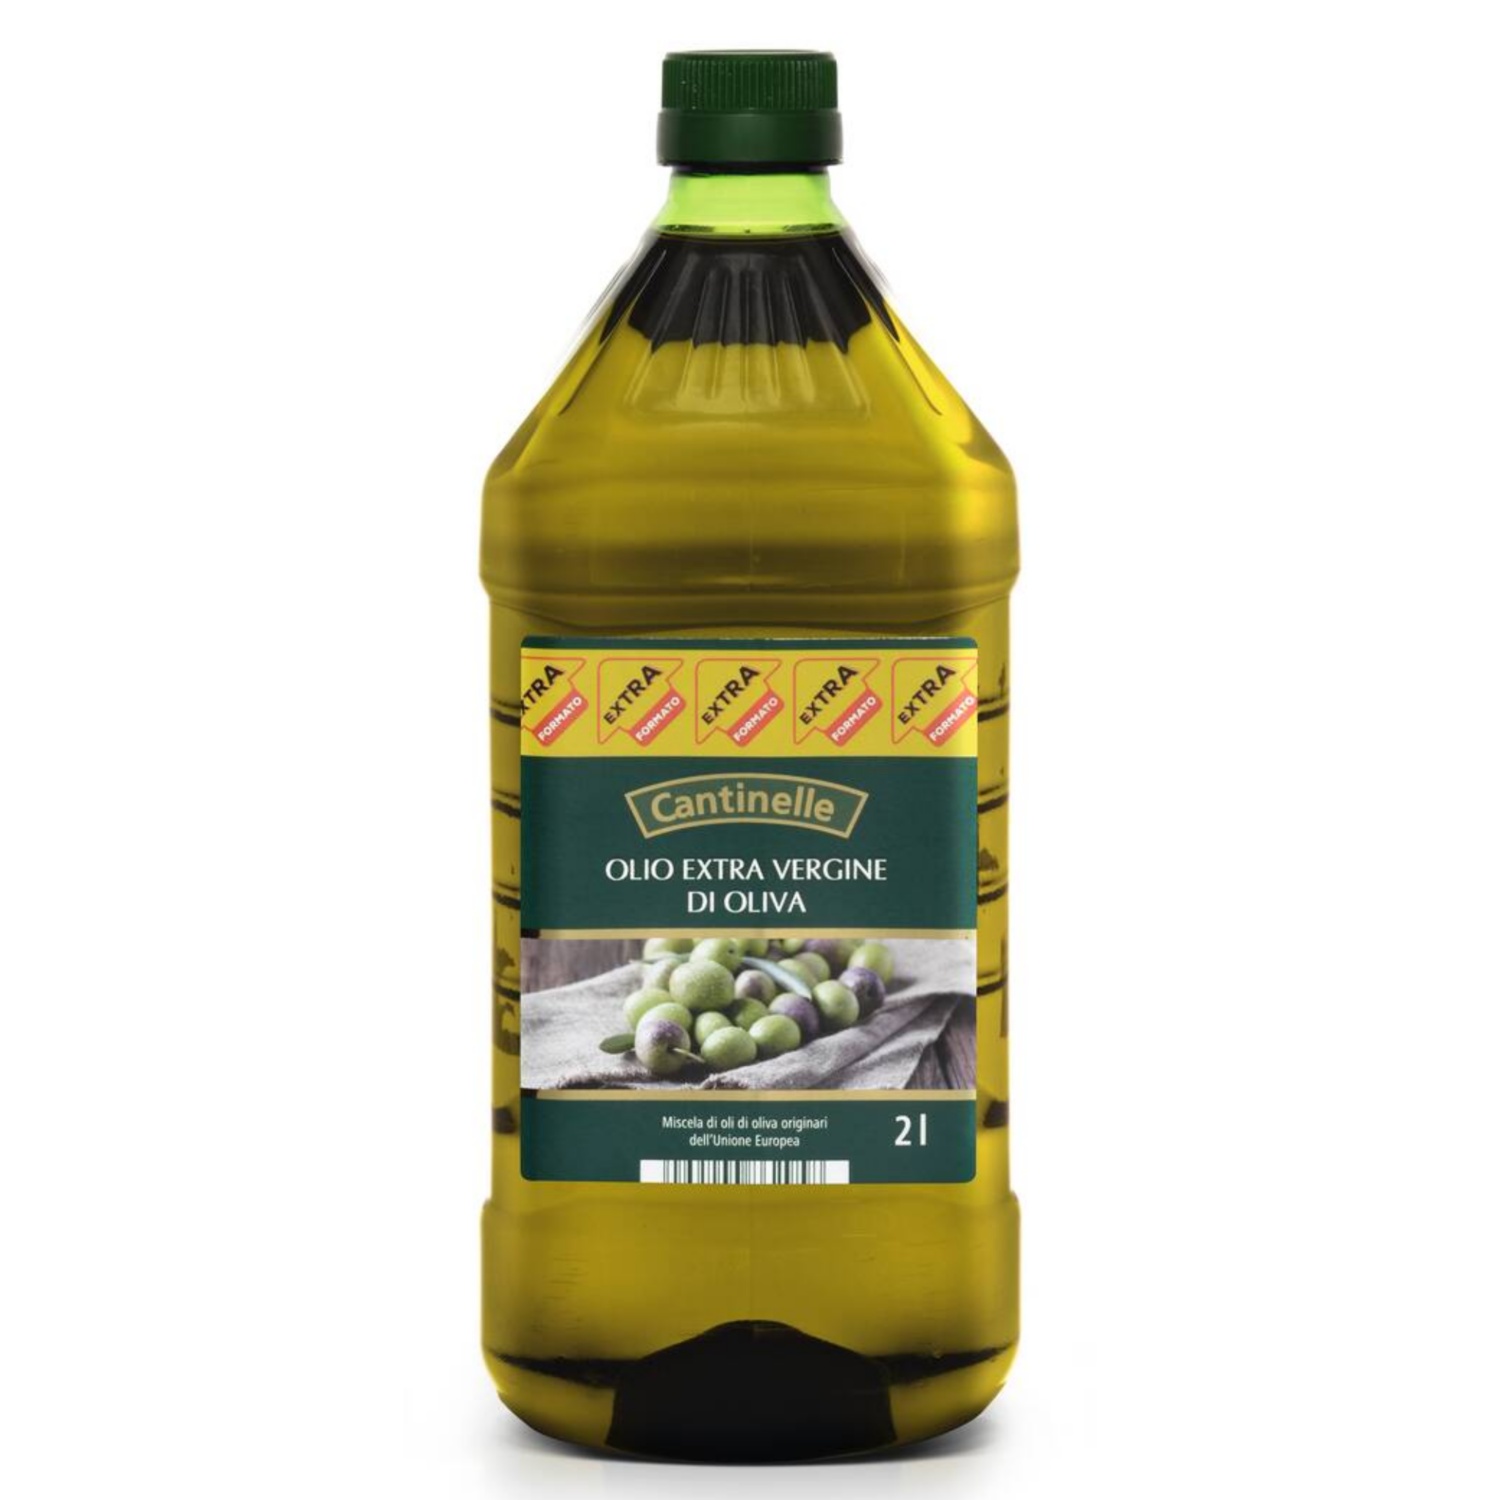 CANTINELLE Extra deviško oljčno olje